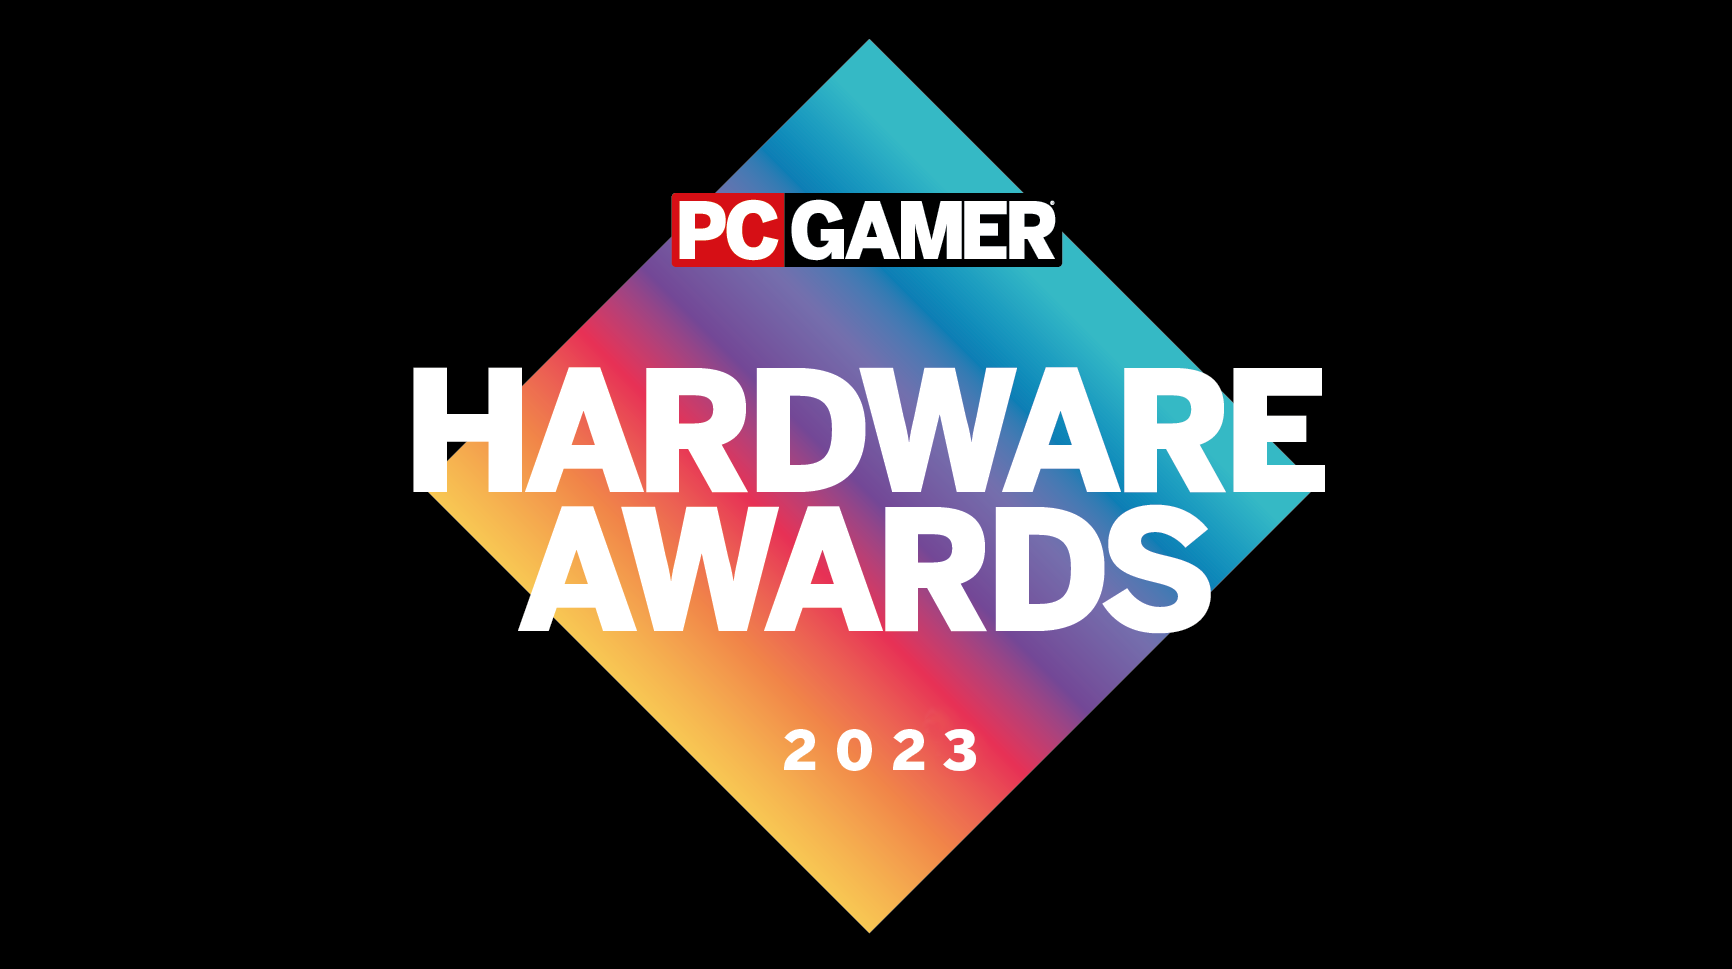 PC Gamer hardware awards logo